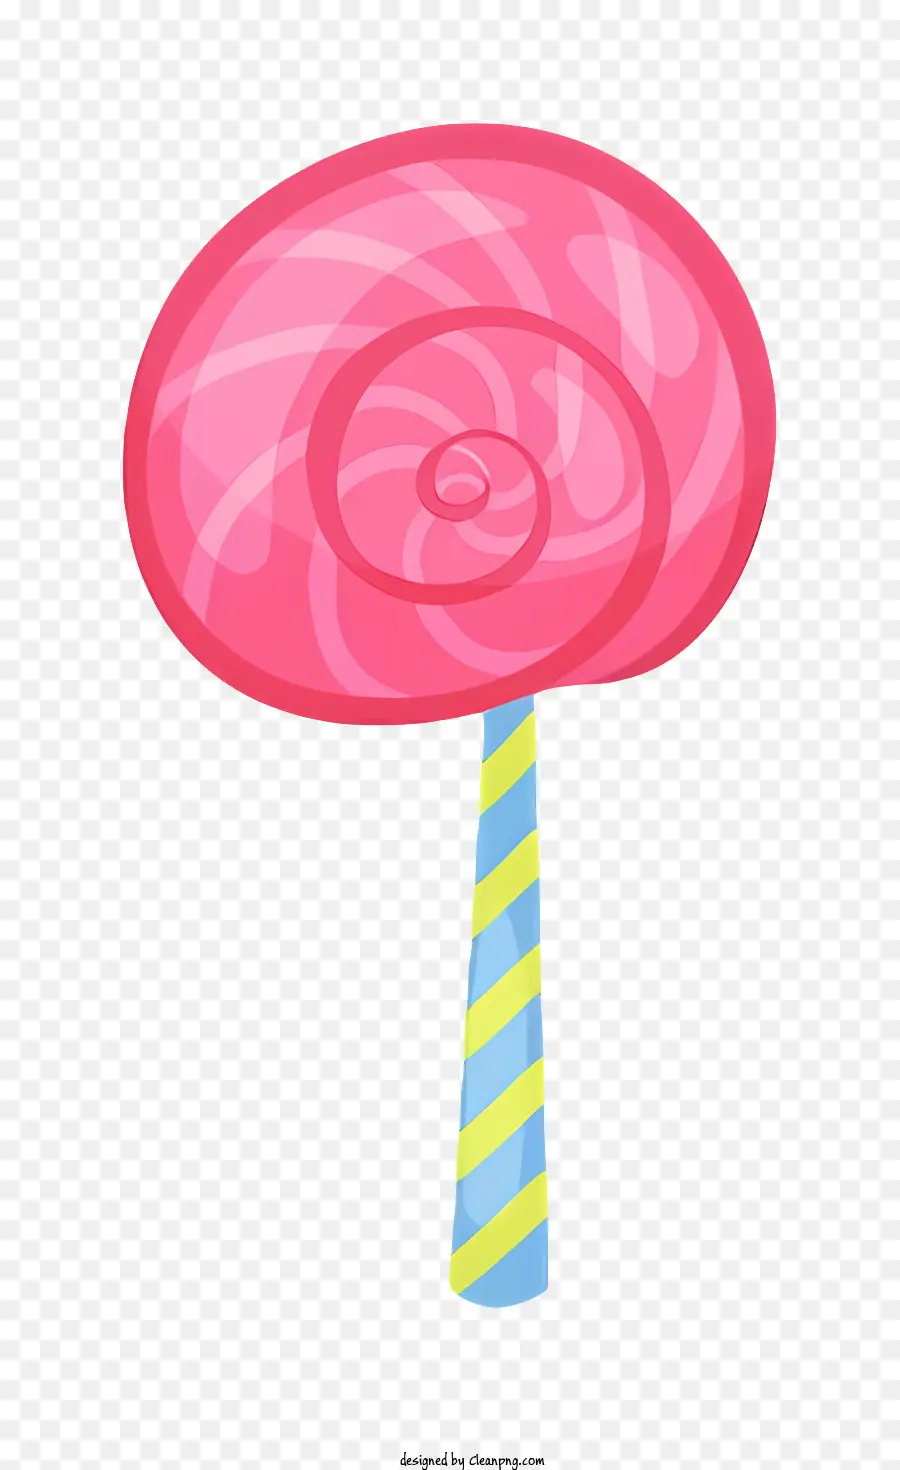 Hoạt hình màu hồng kẹo mút lớn Lollipop Squishy Lollipop dính kẹo mút - Lollipop lớn màu hồng với sọc vàng và xanh